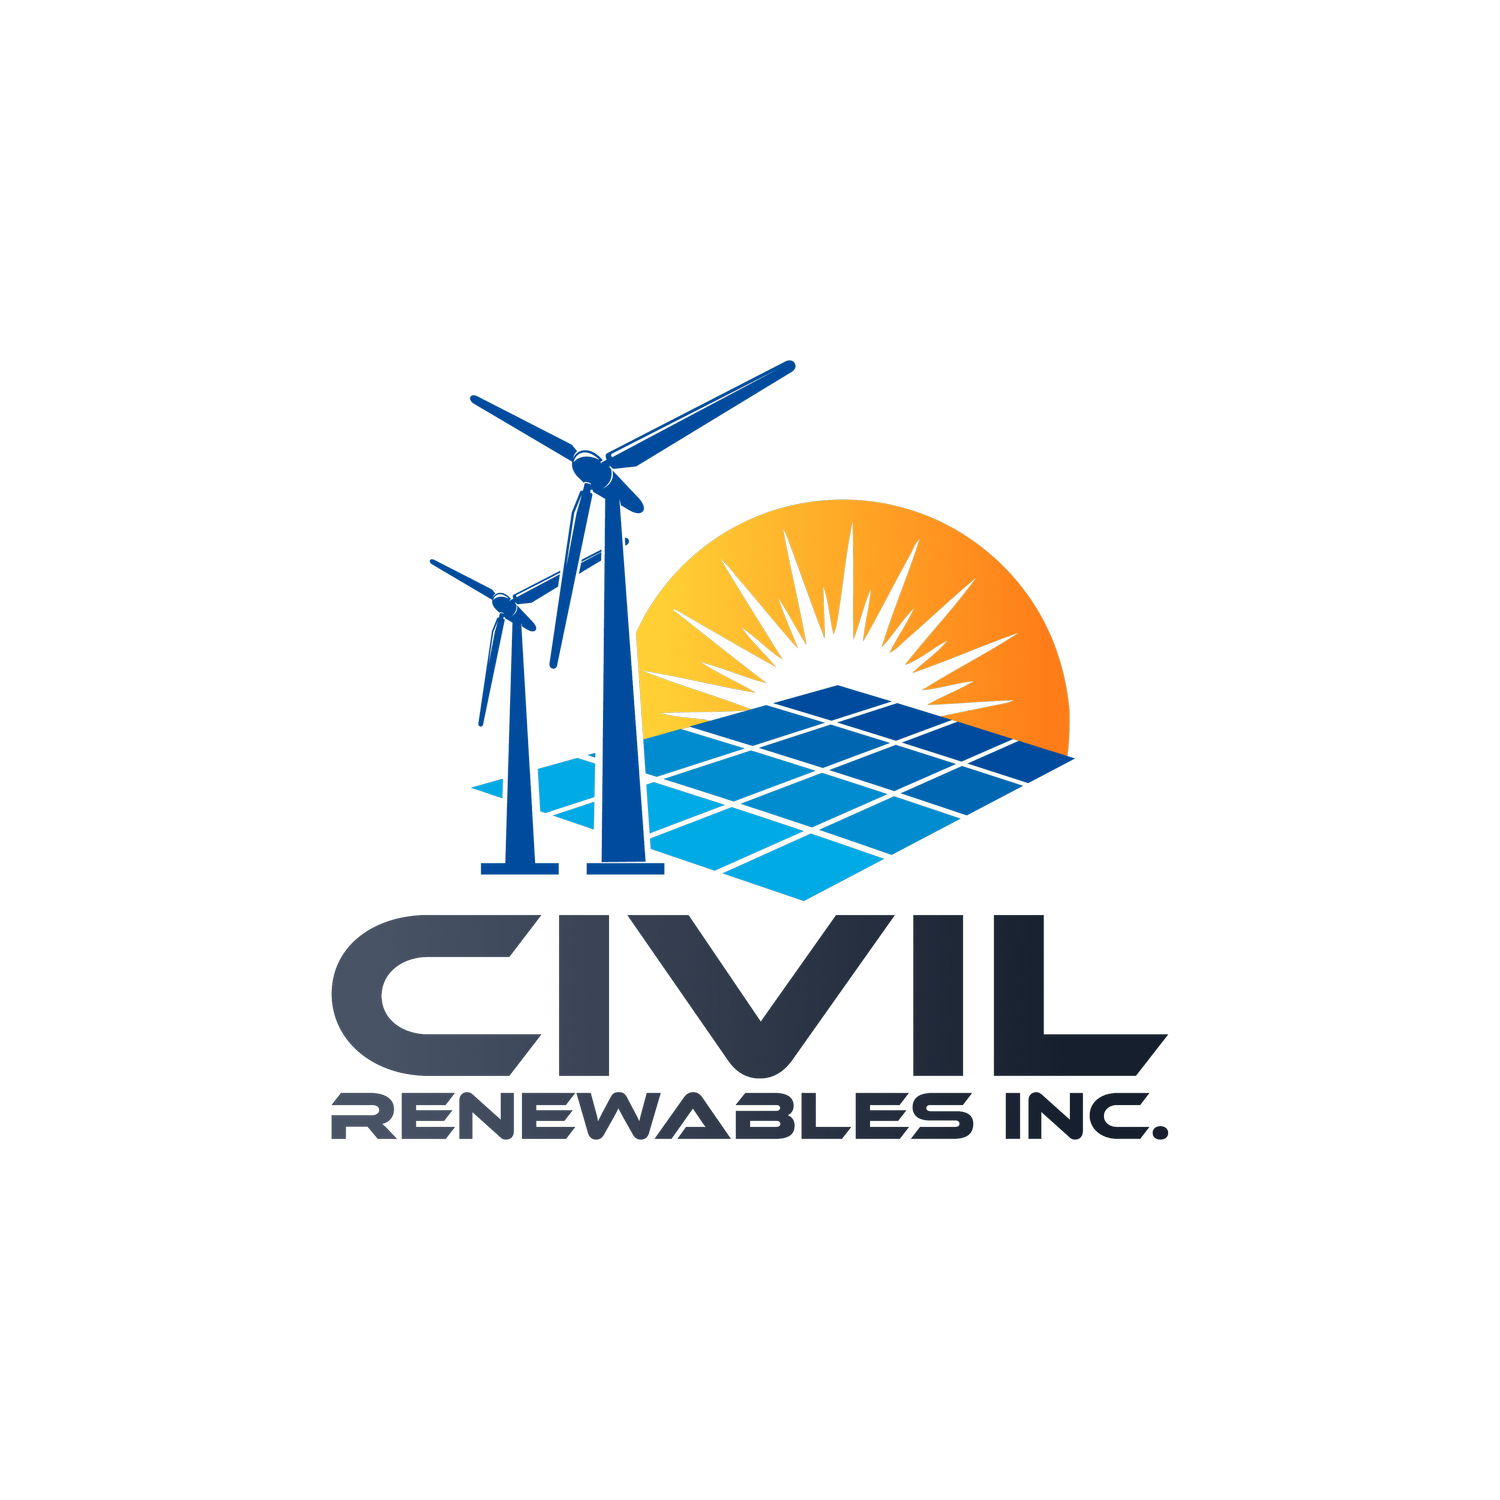 Civil Renewables, Inc.